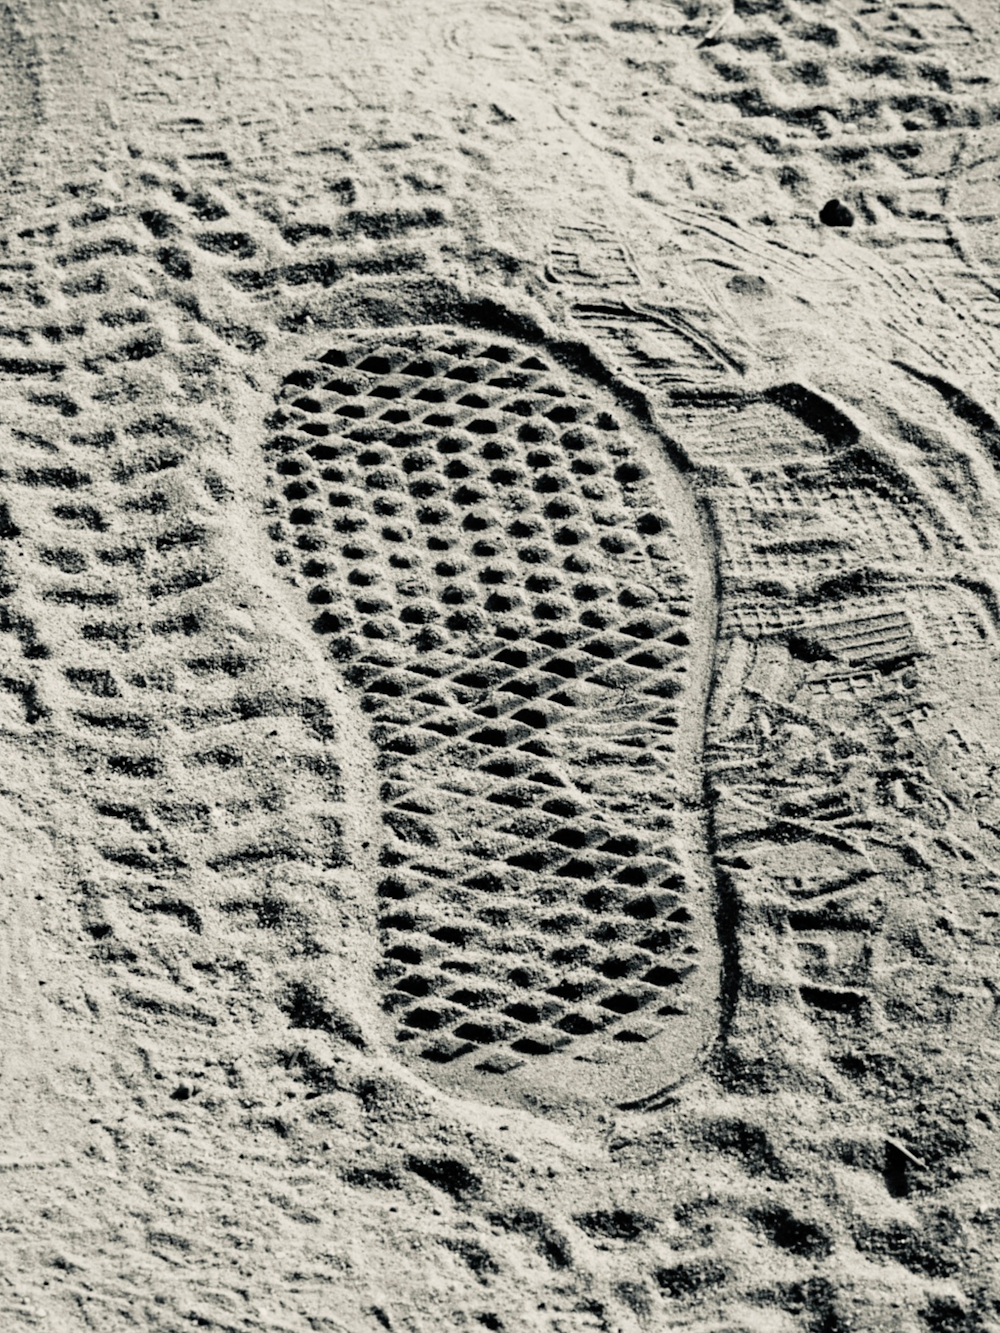 ビーチの砂に人の足跡